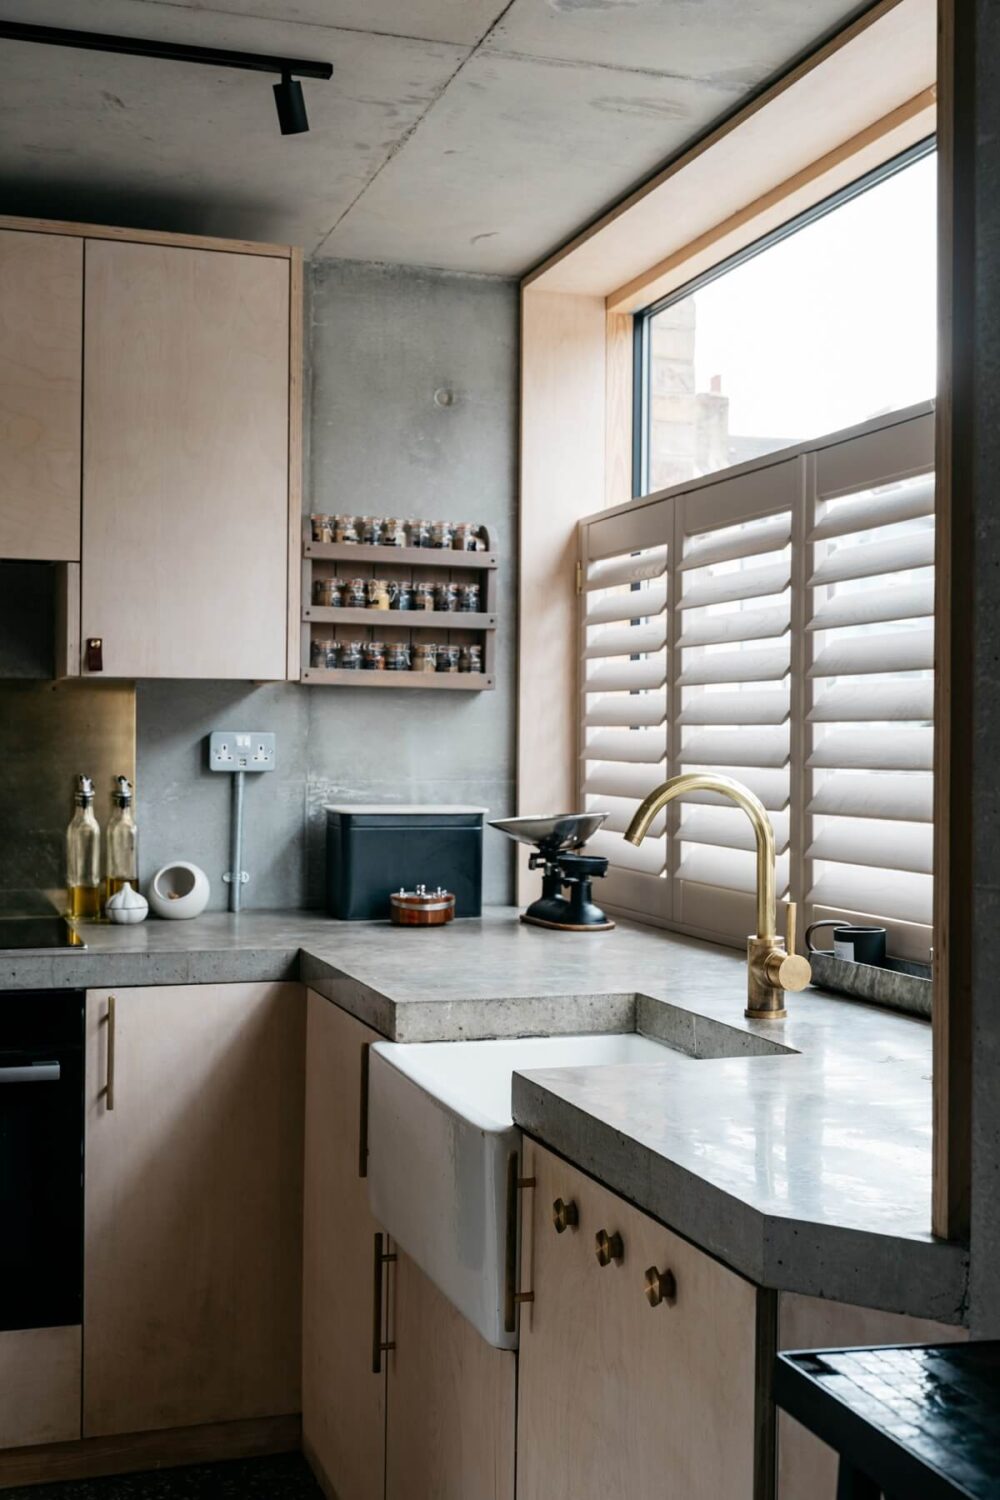 belfast-sink-brass-taps-modern-kitchen-nordroom